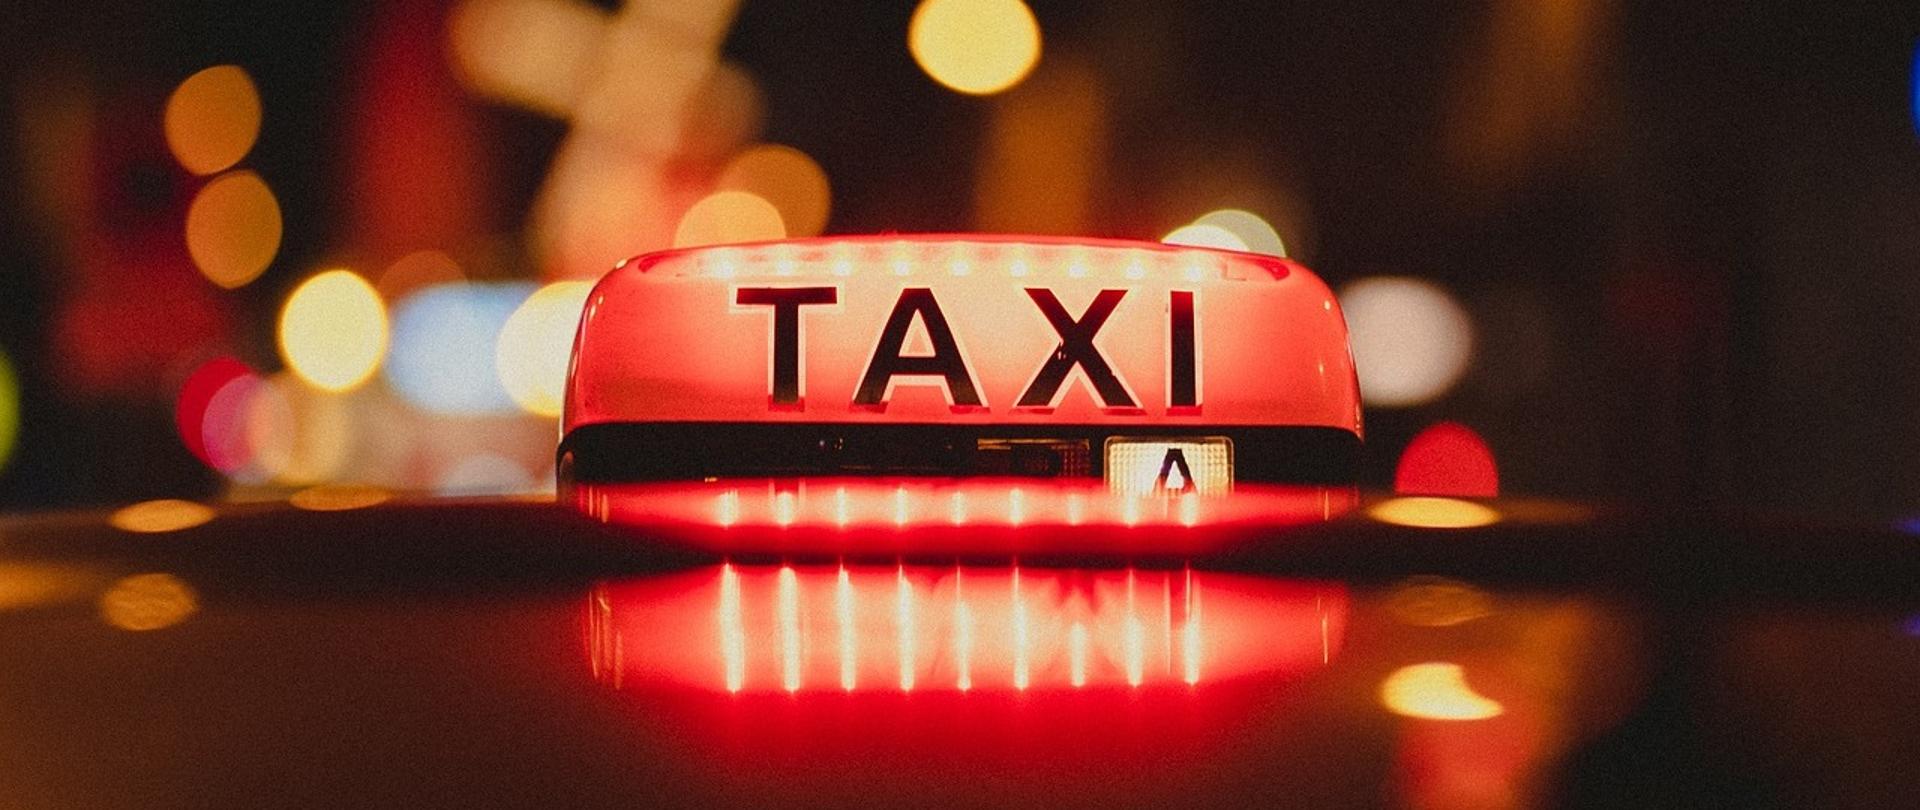 Zdjęcie napisu "Taxi" na samochodzie. Podświetlony na kolor czerwony